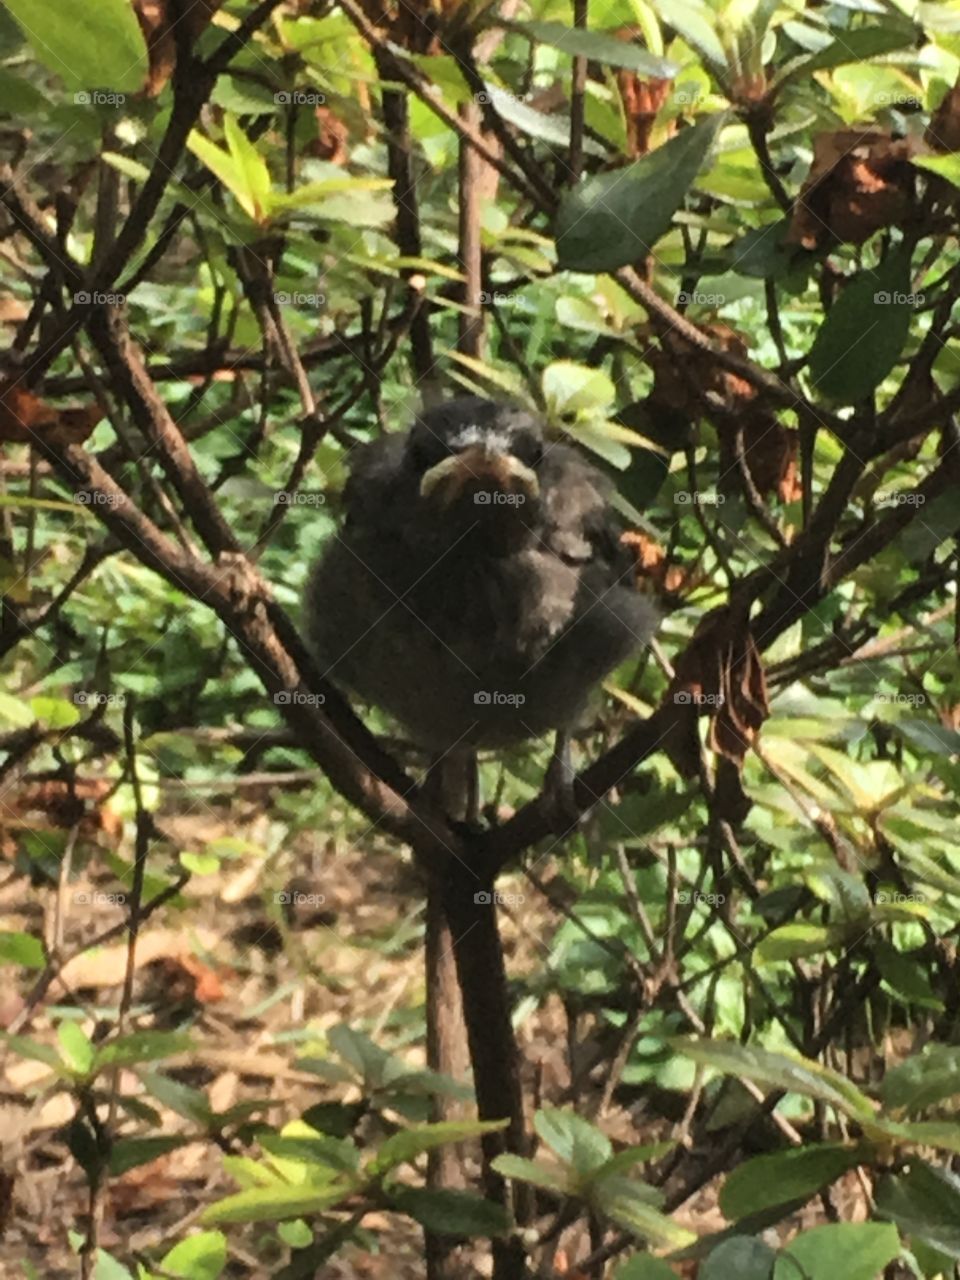 Baby bird in bush